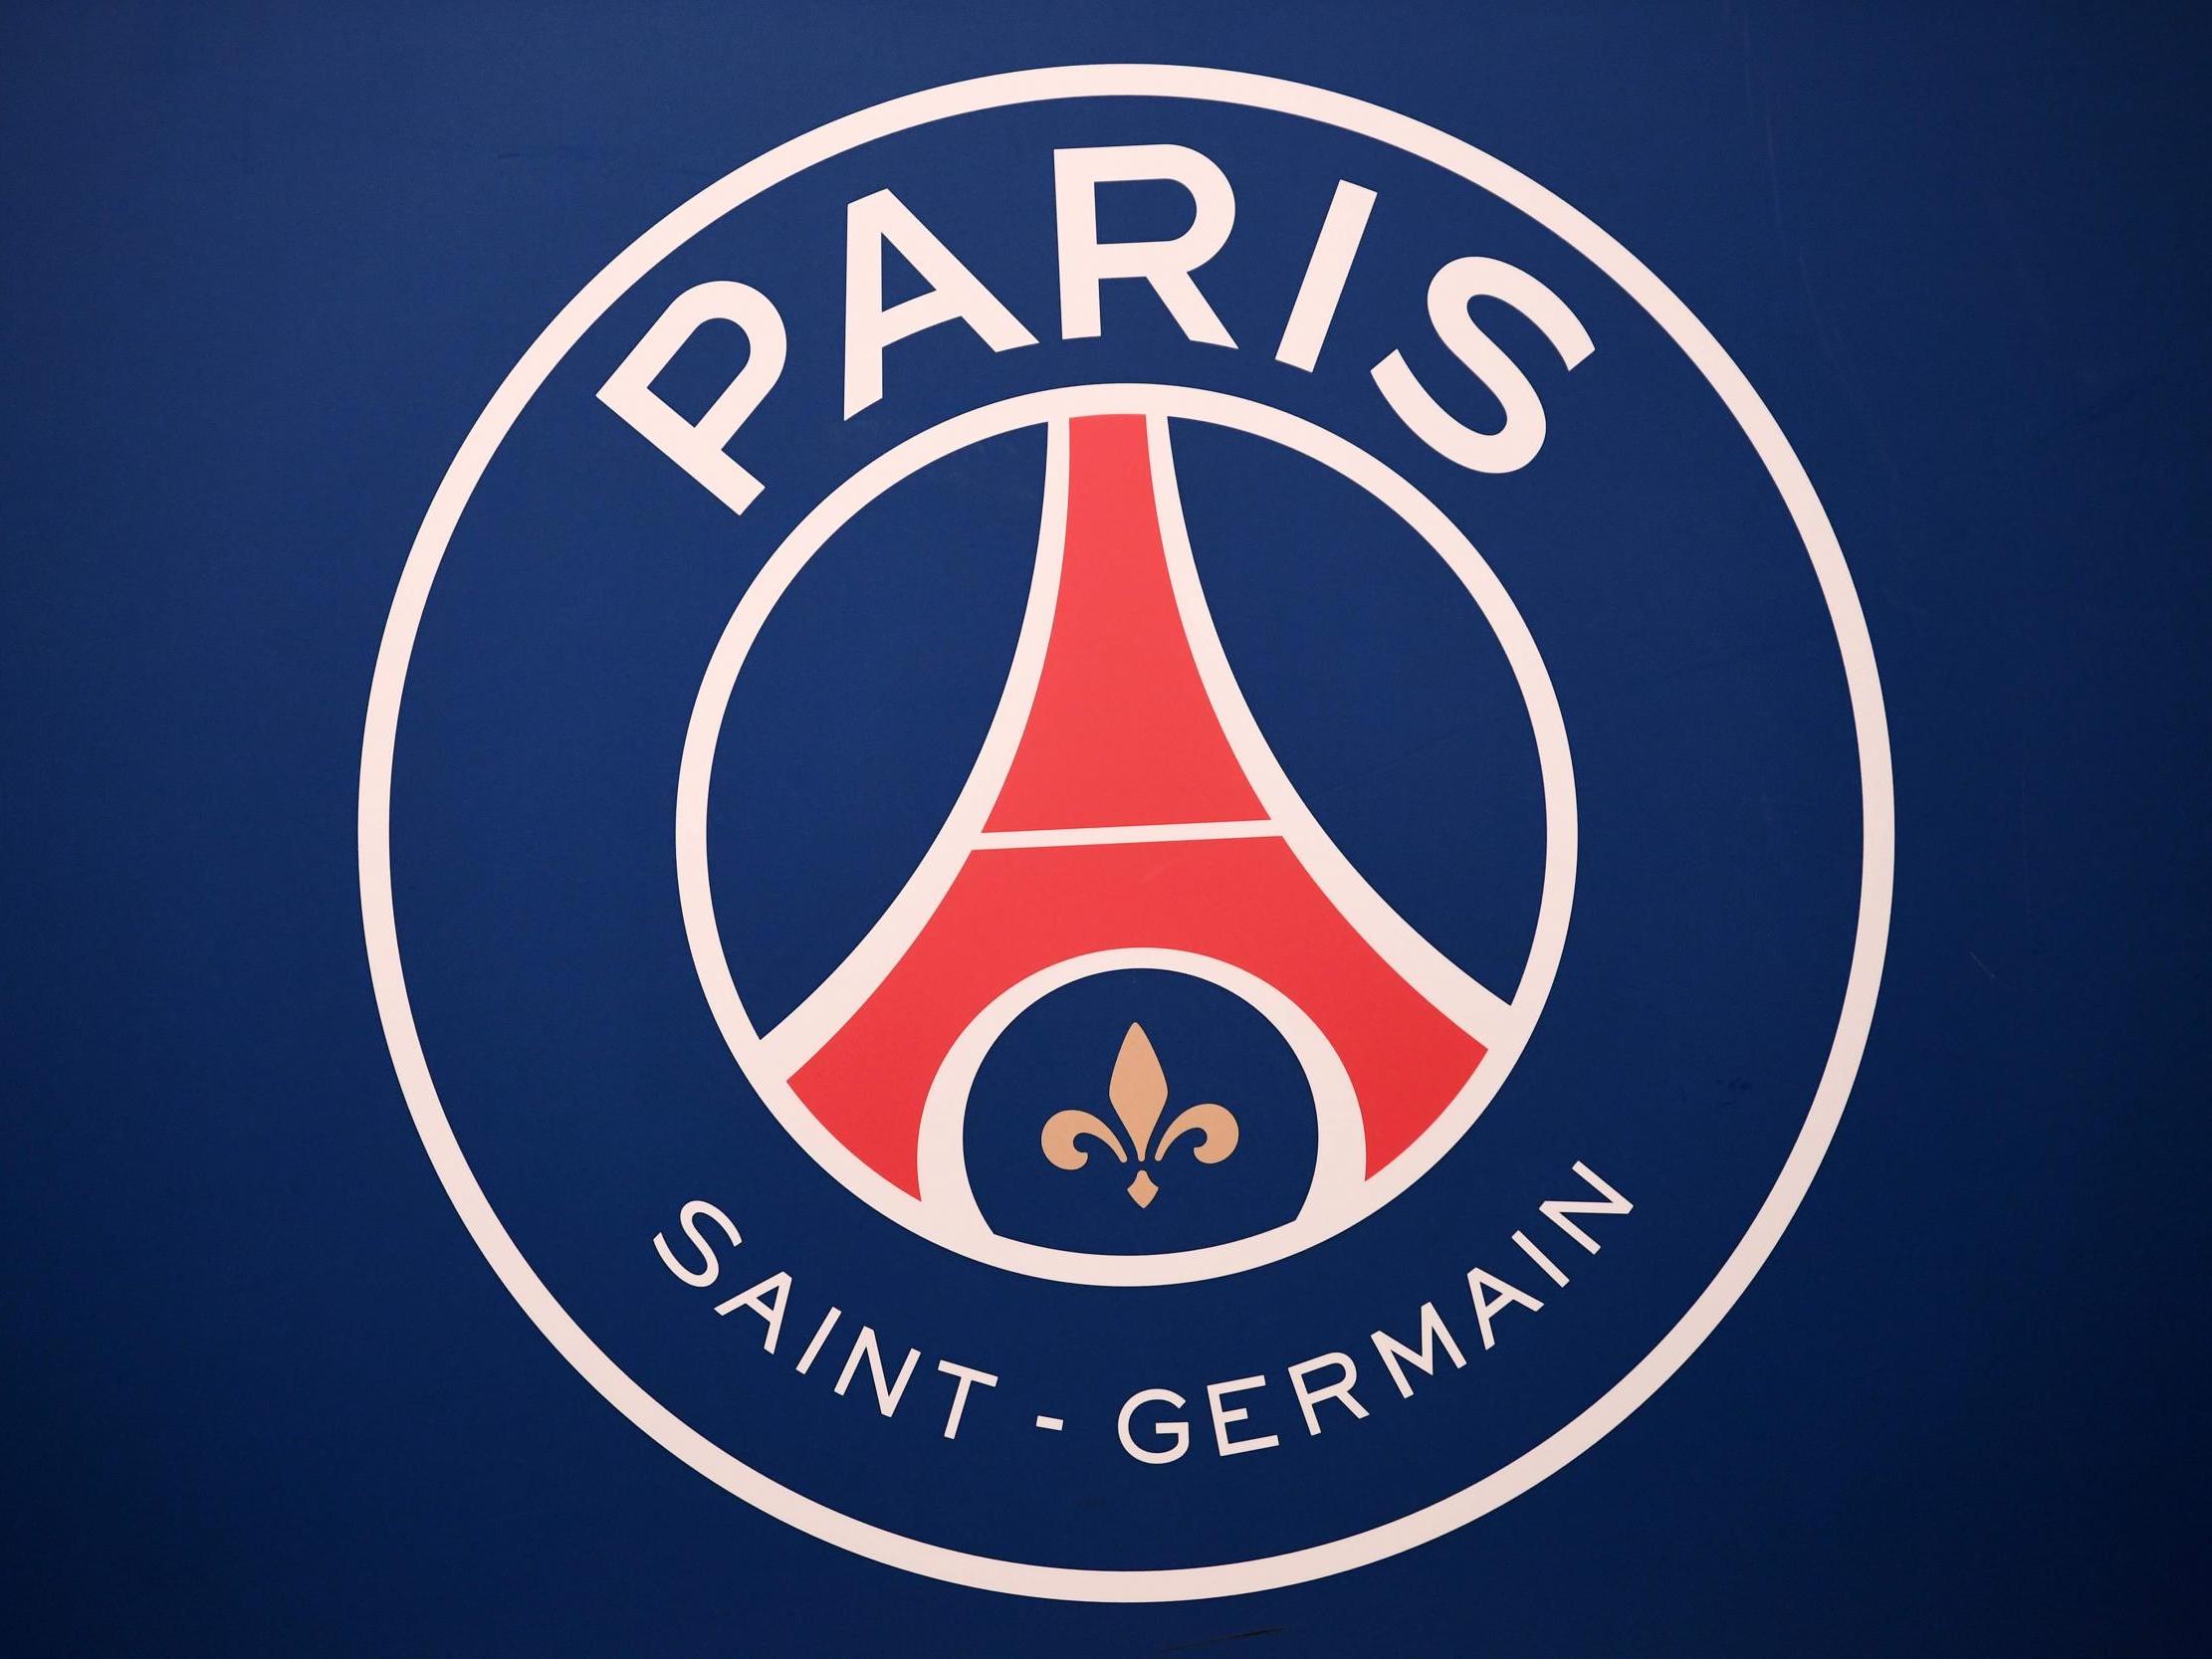 El equipo parisino comenzará su camino en la nueva temporada de la Ligue 1 el próximo 10 de septiembre